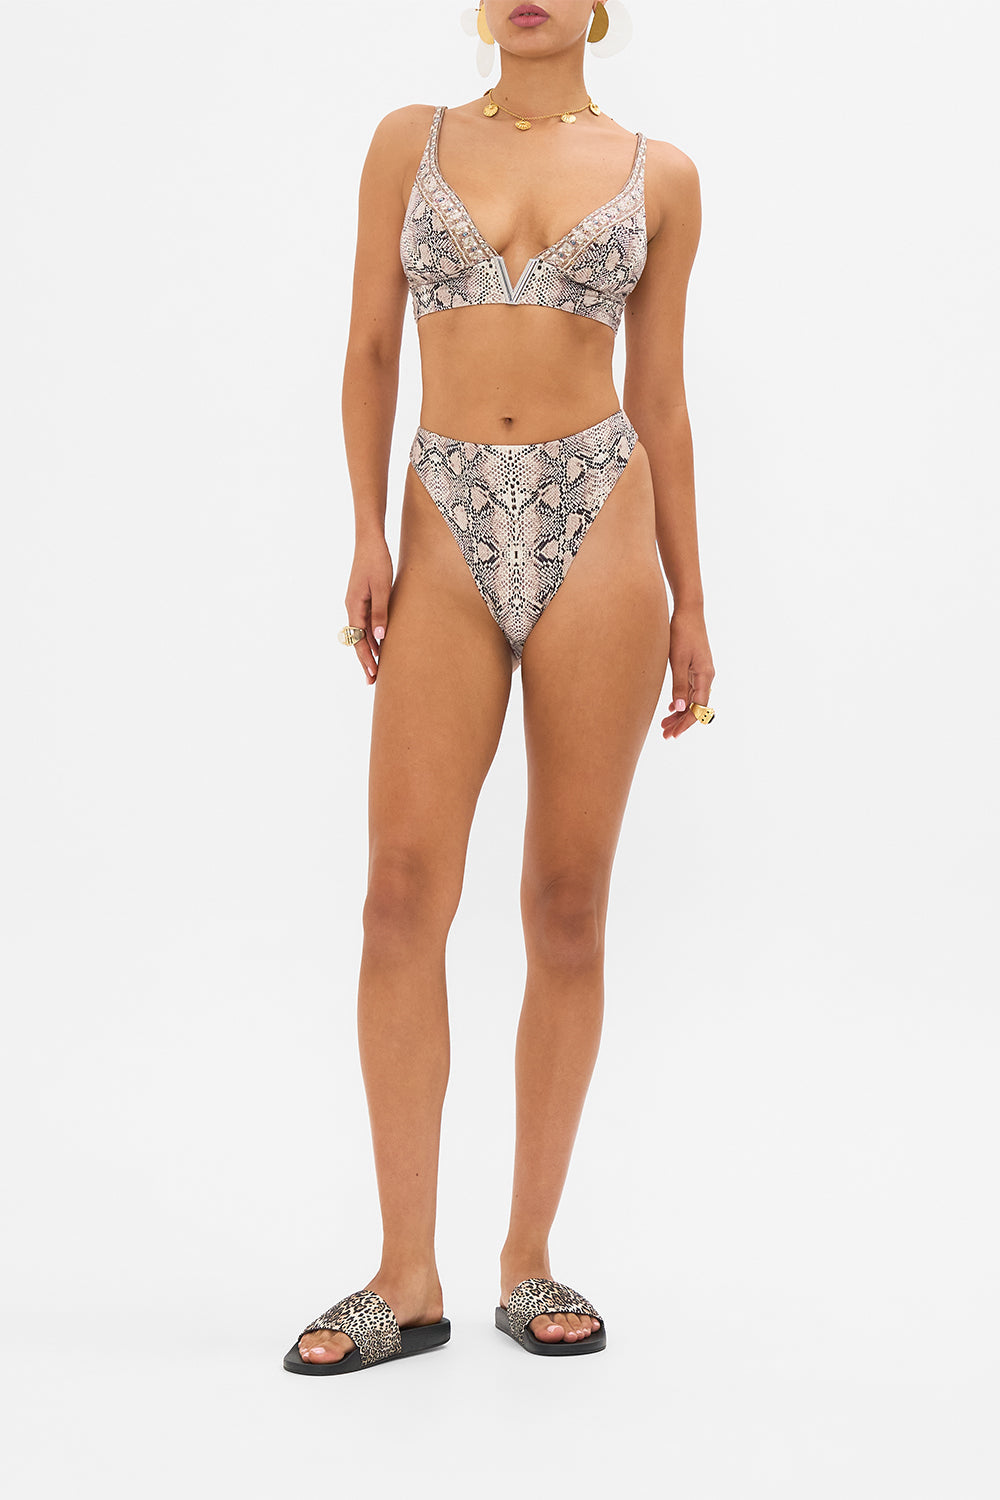 CAMILLA resortwear bikini top in Looking Glass Houses print